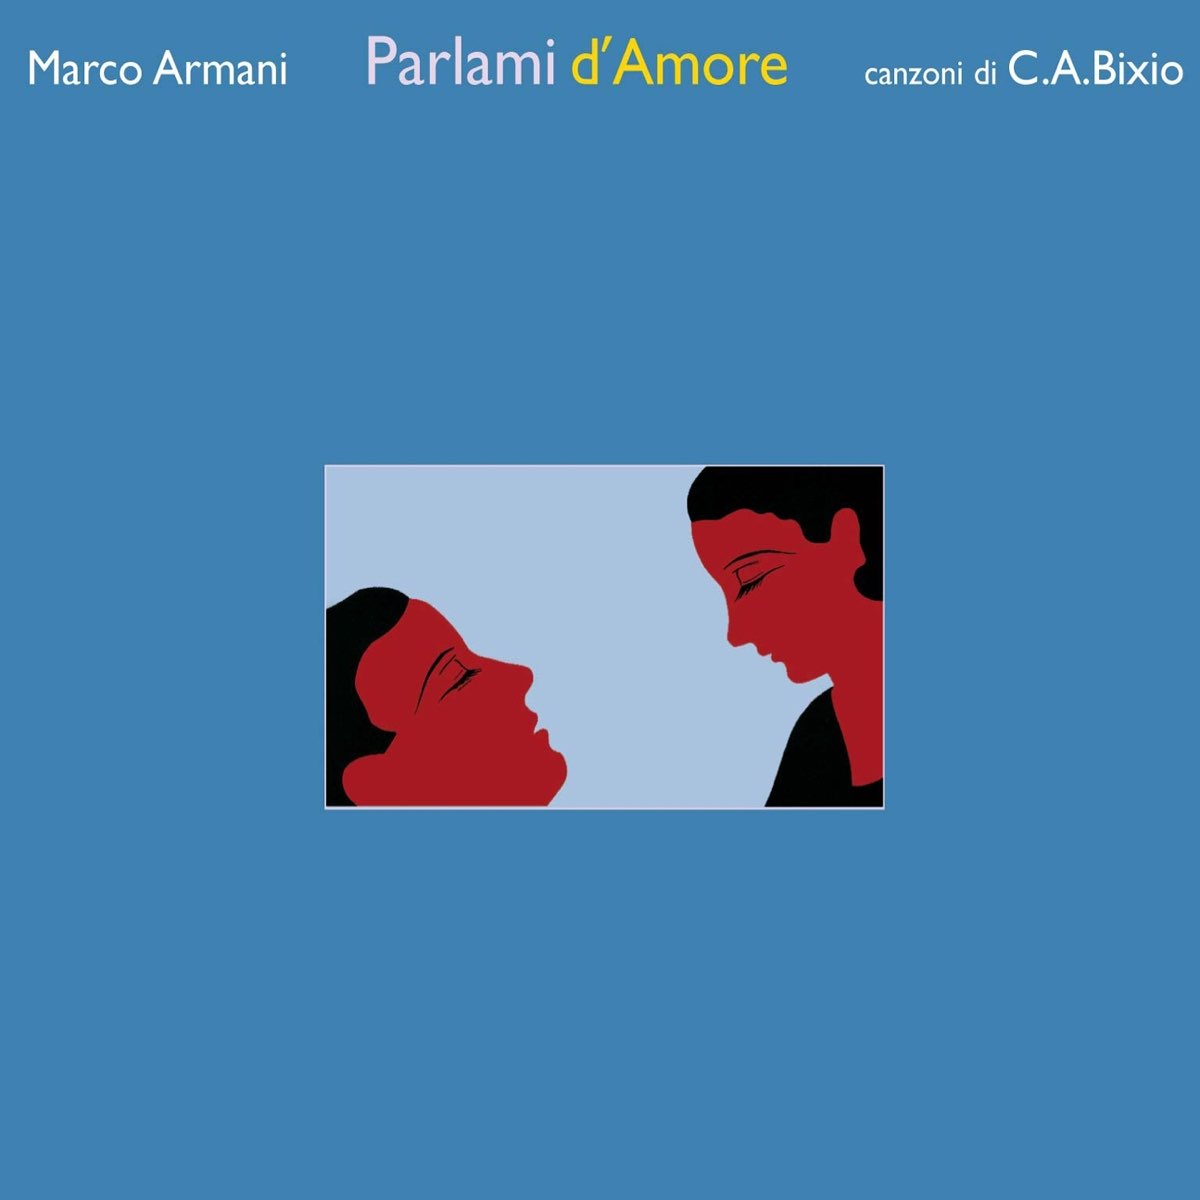 Parlami amore. Parlami d'Amore, Mariu'! Партитура оригинала. Песня è la Vita Marco Armani. Arman Marcos.